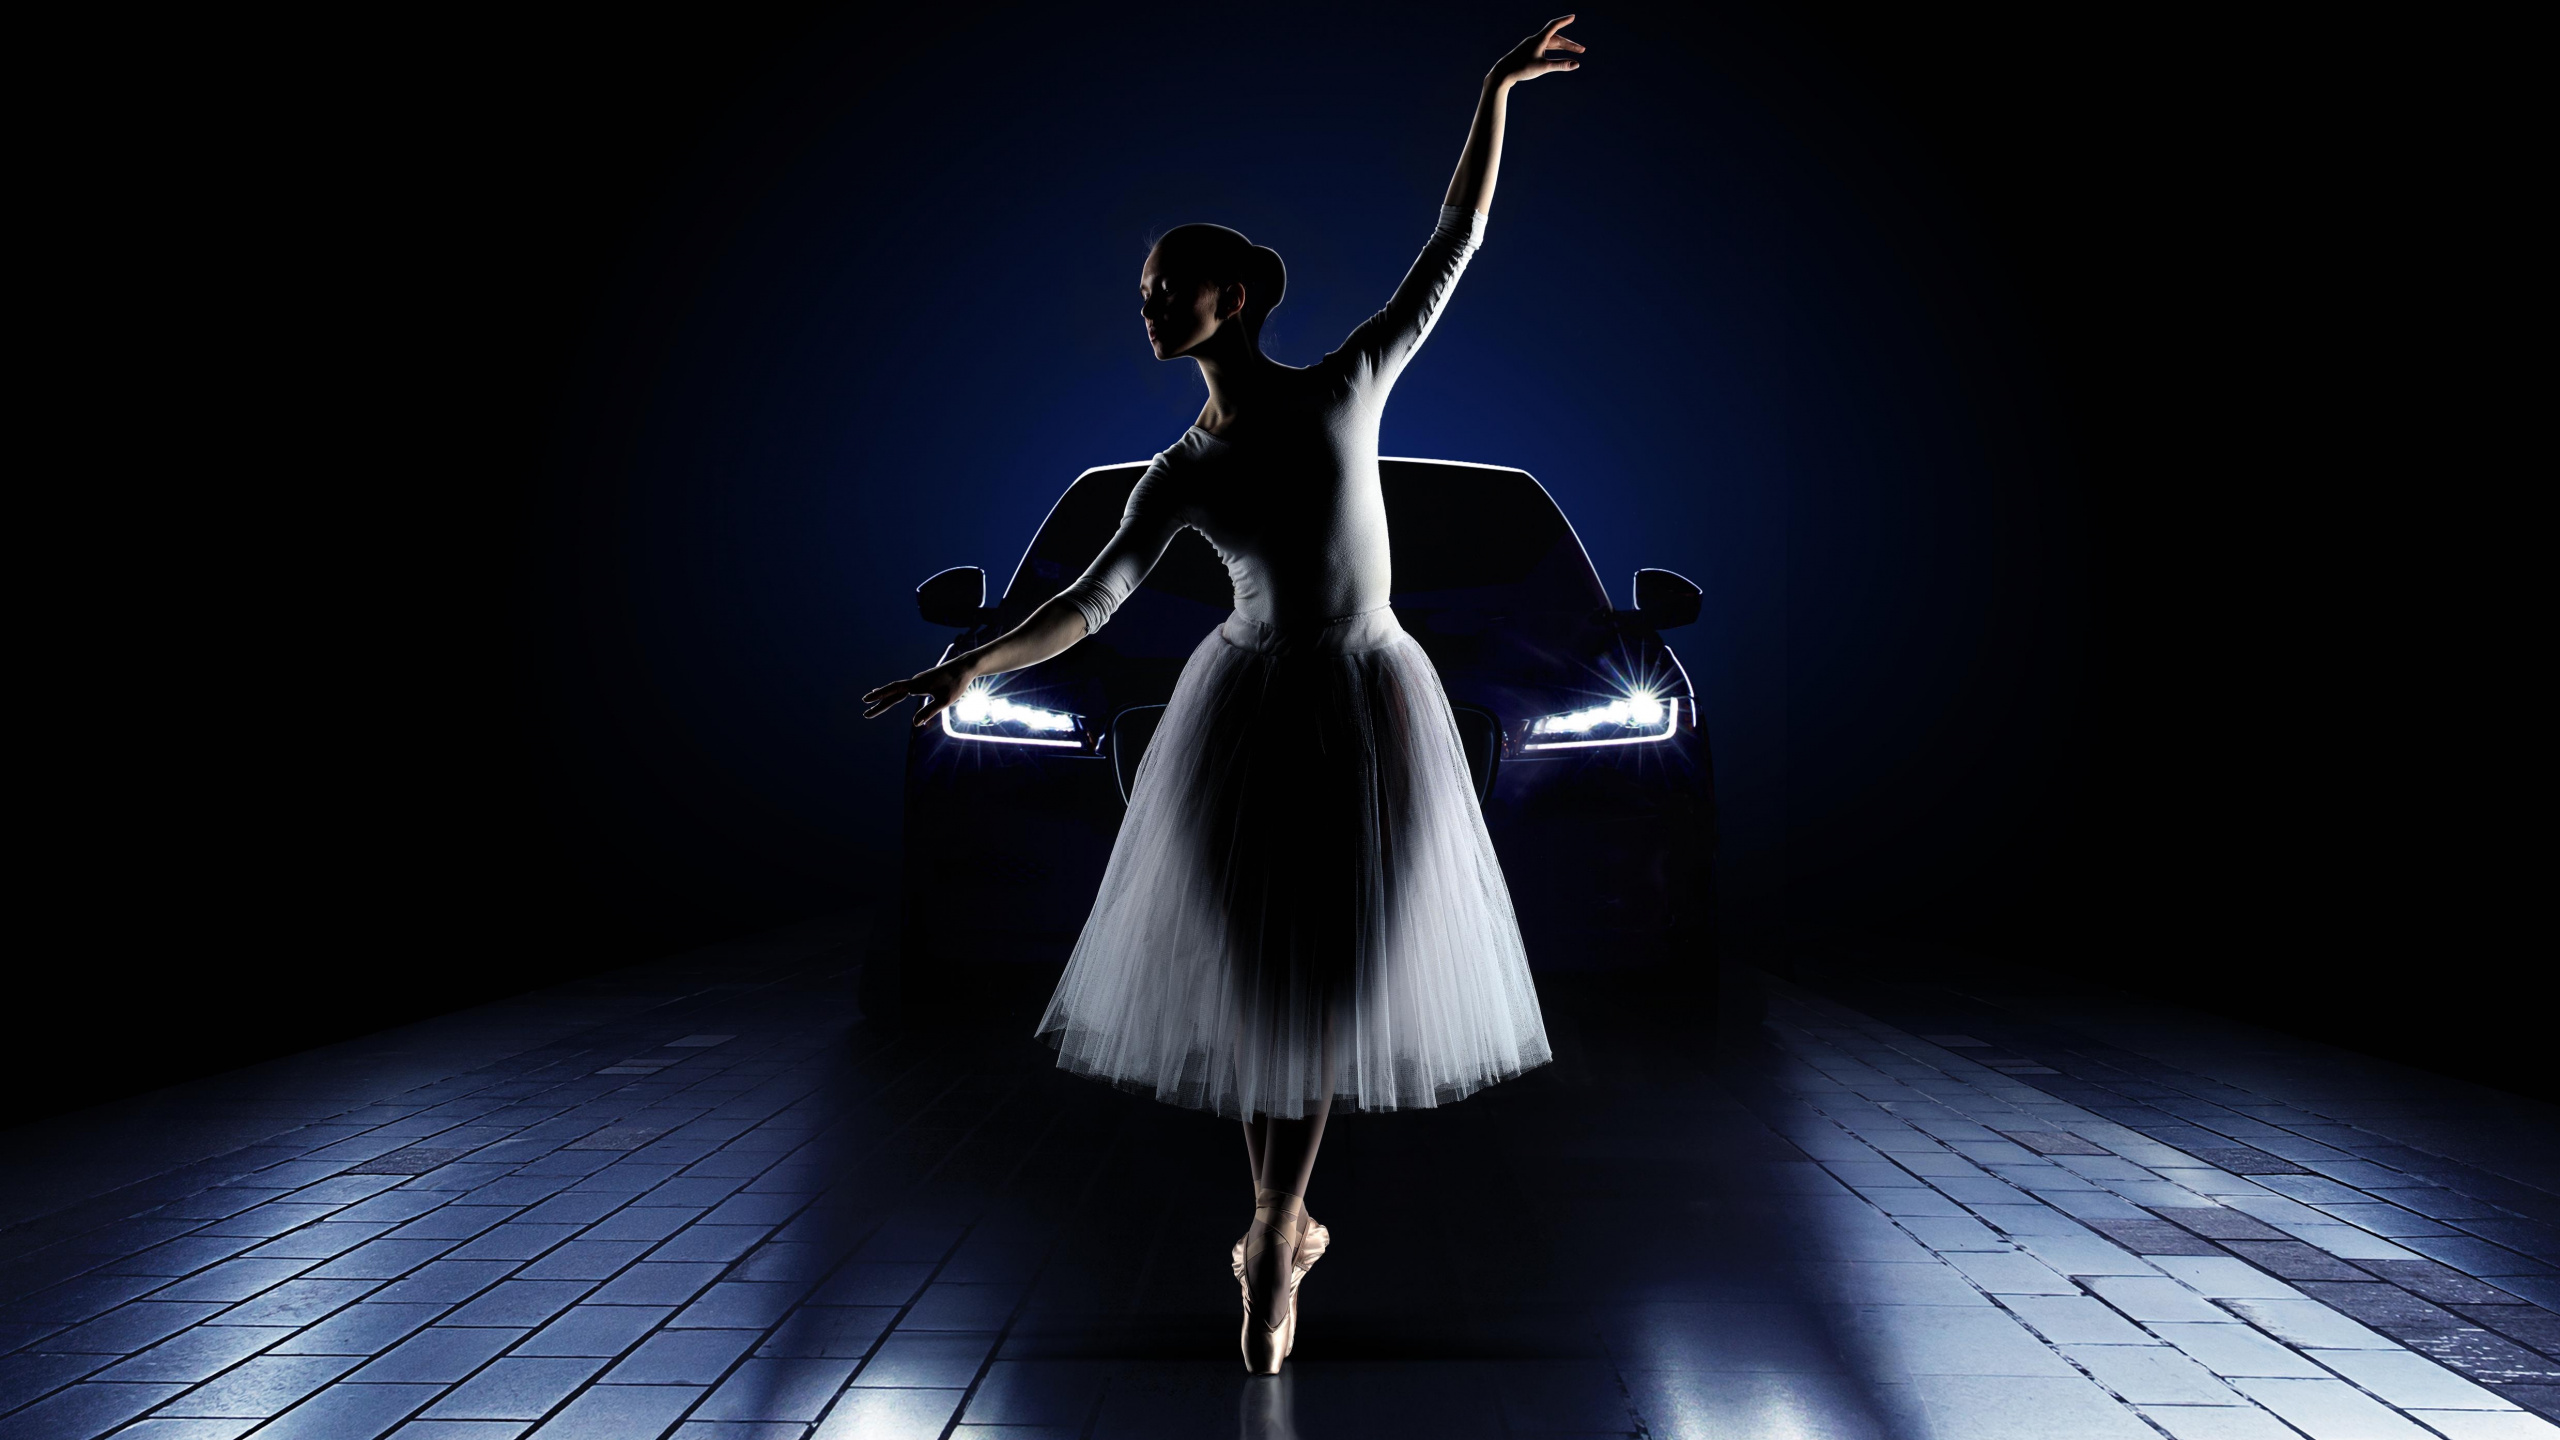 Ballett, Balletttänzer, Licht, Tänzer, Tanz. Wallpaper in 2560x1440 Resolution